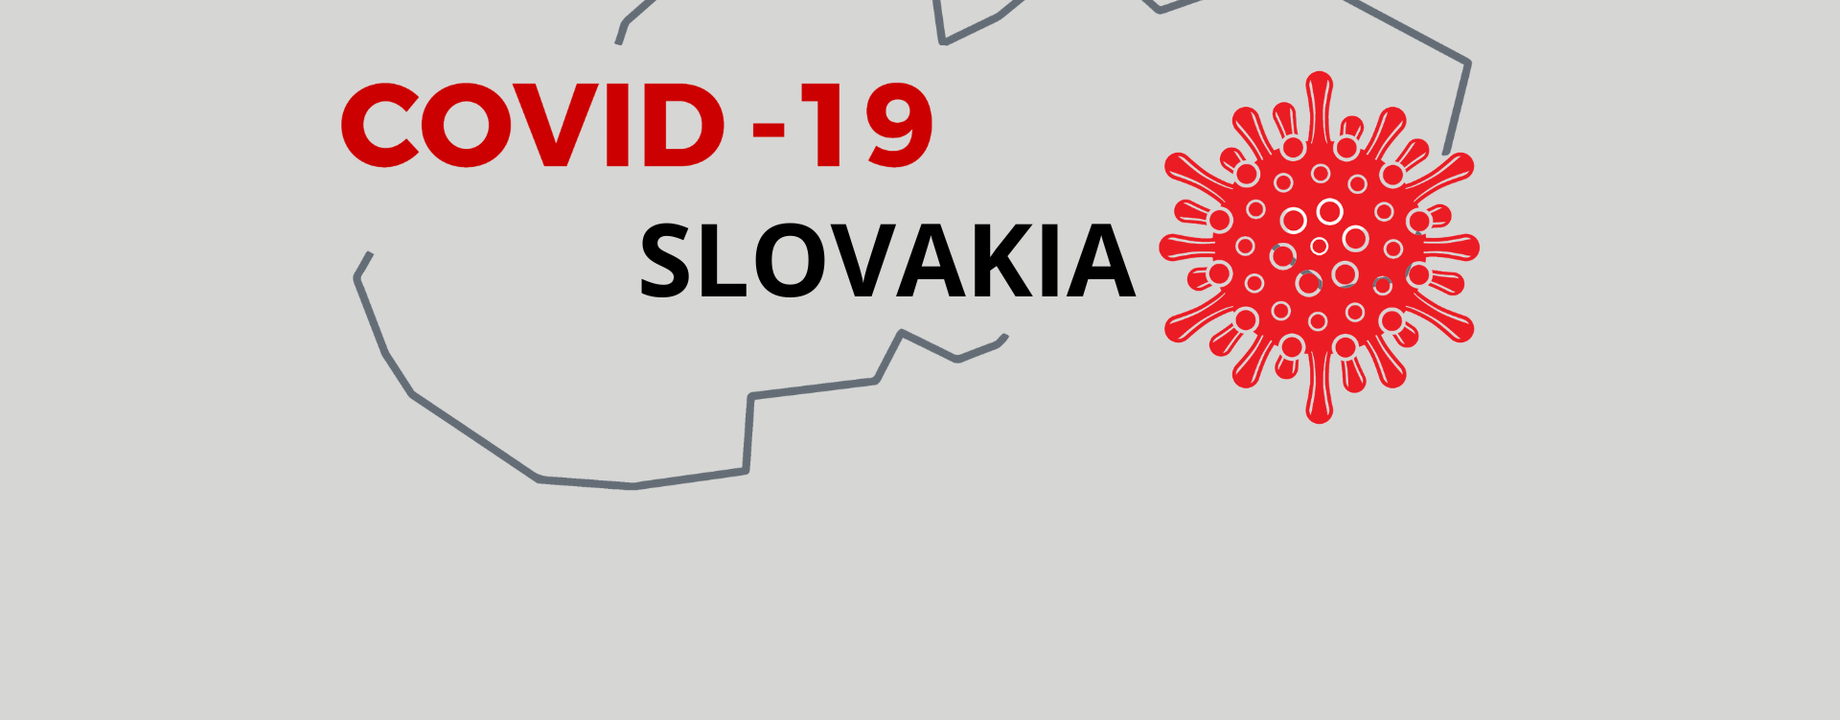 Covid 19 slovakia logo